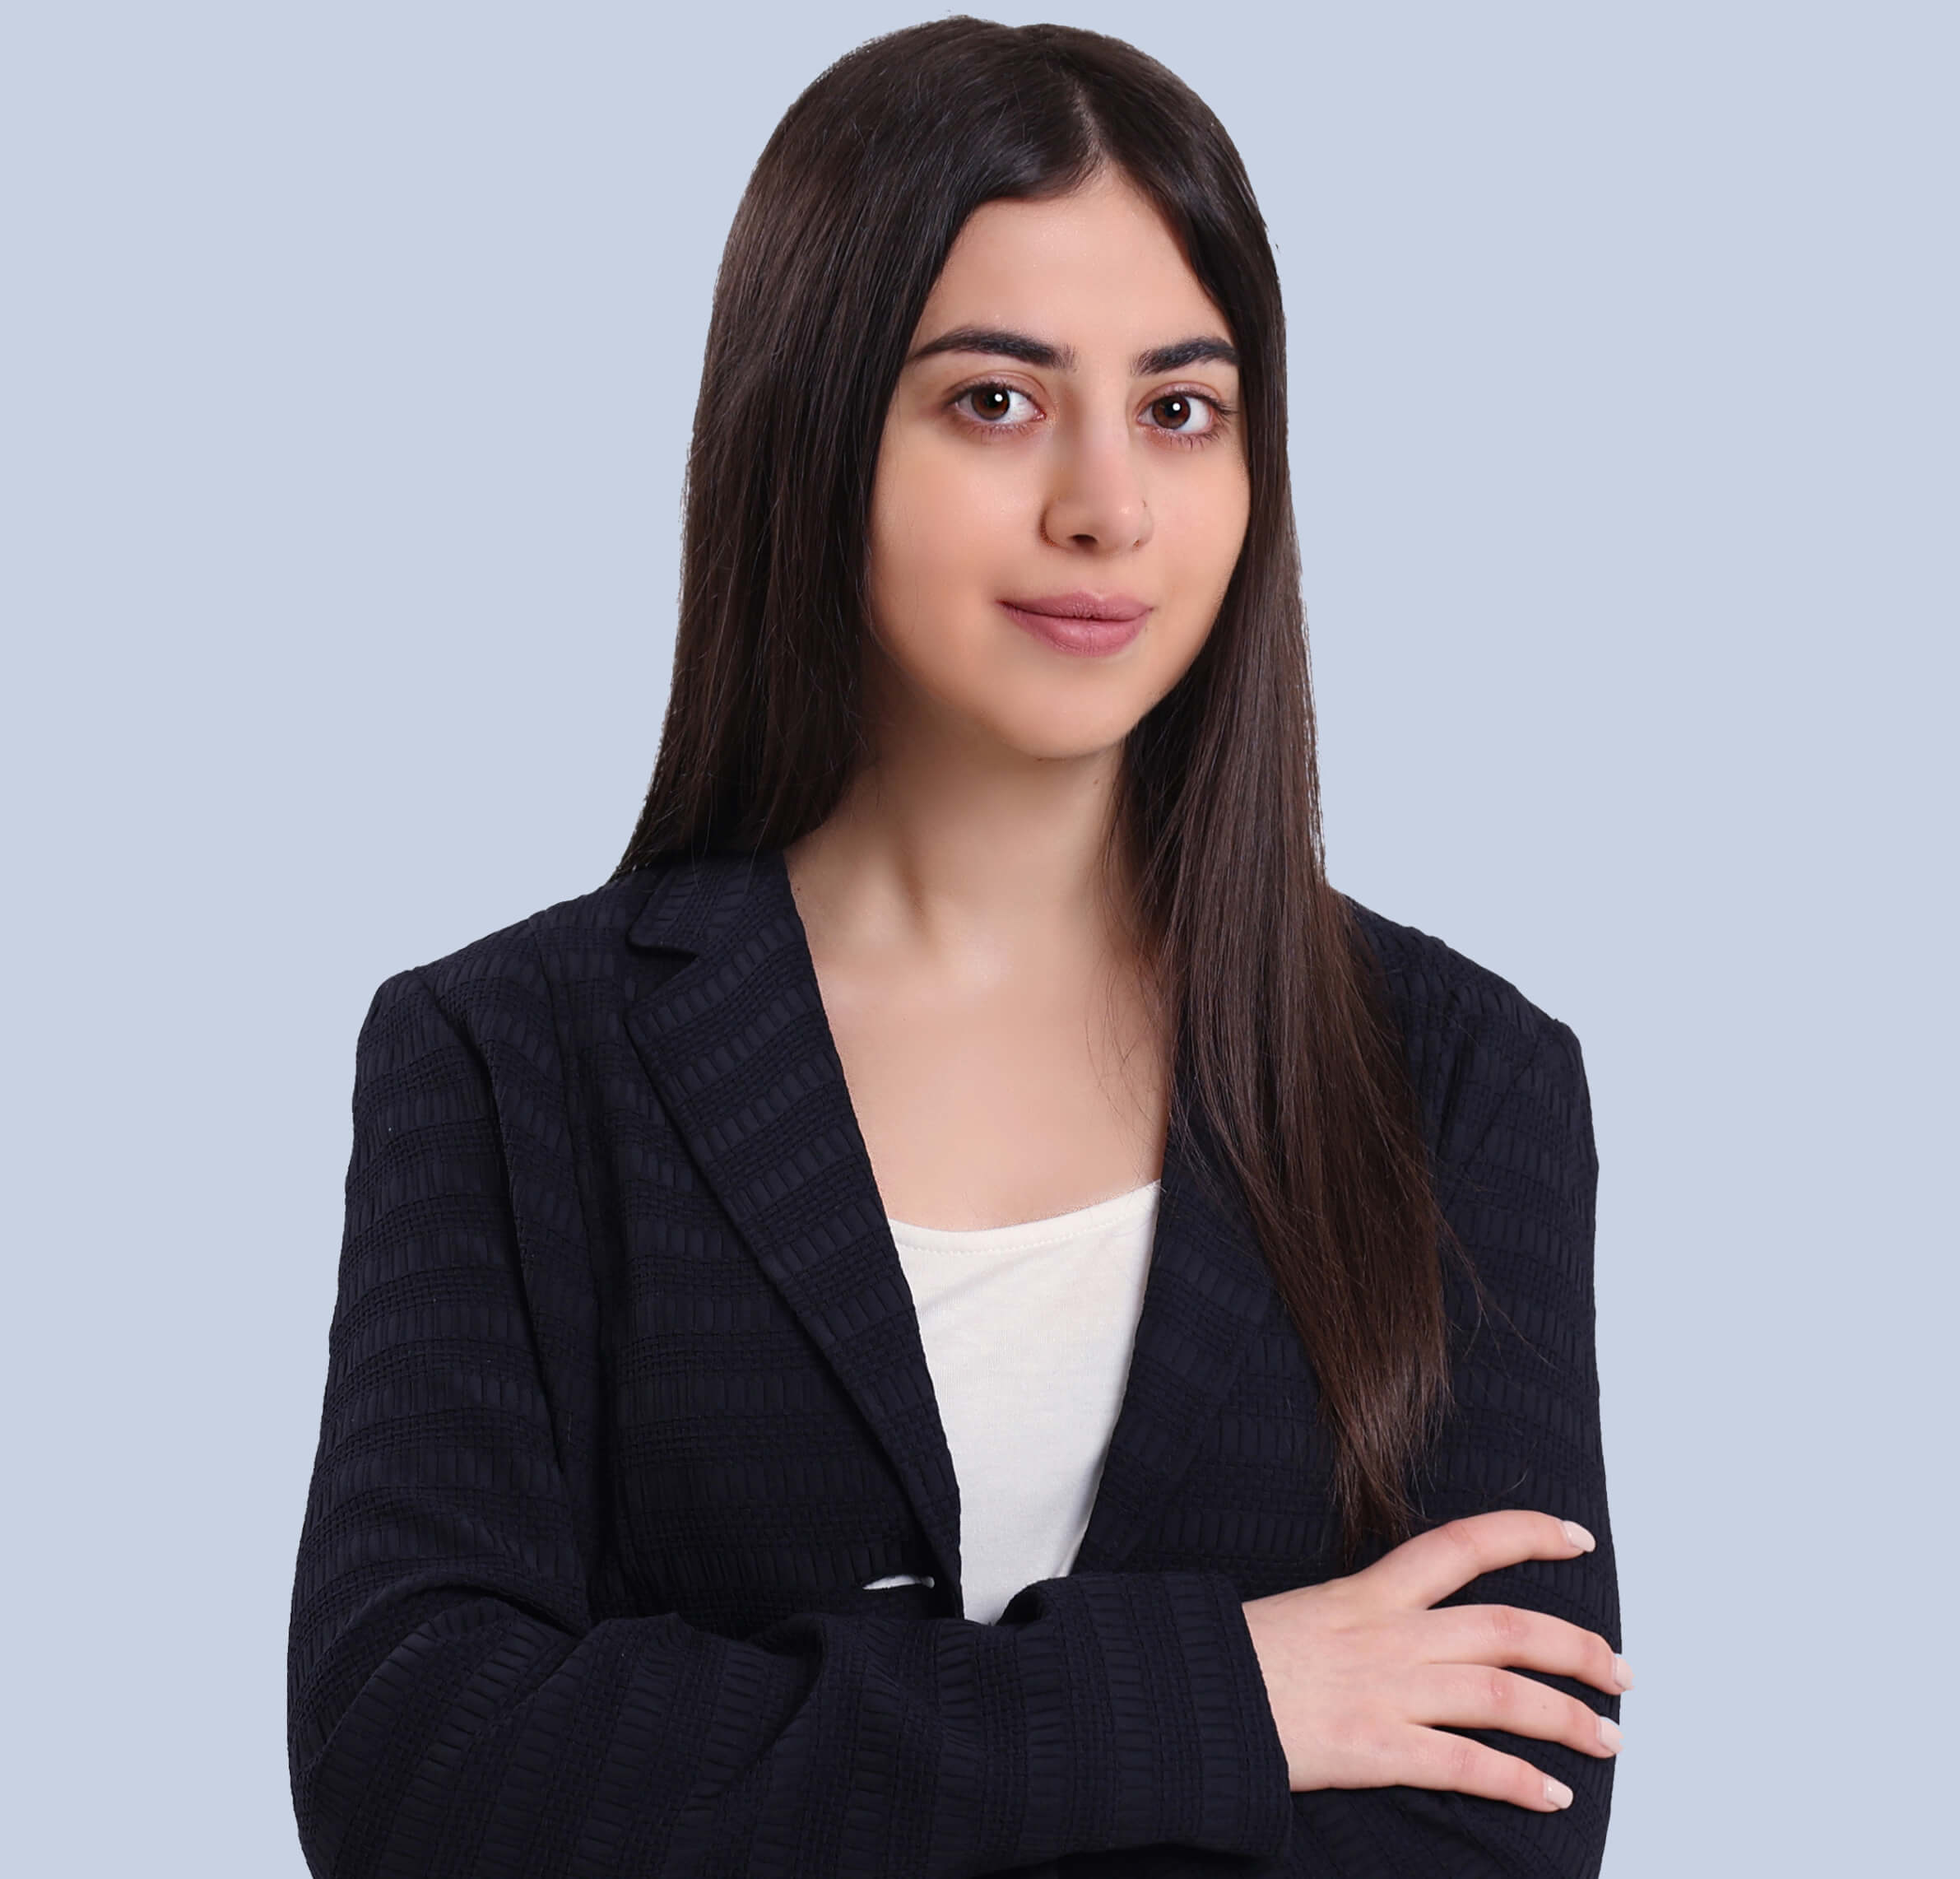 Nare Hovhannisyan - Business Development Coordinator